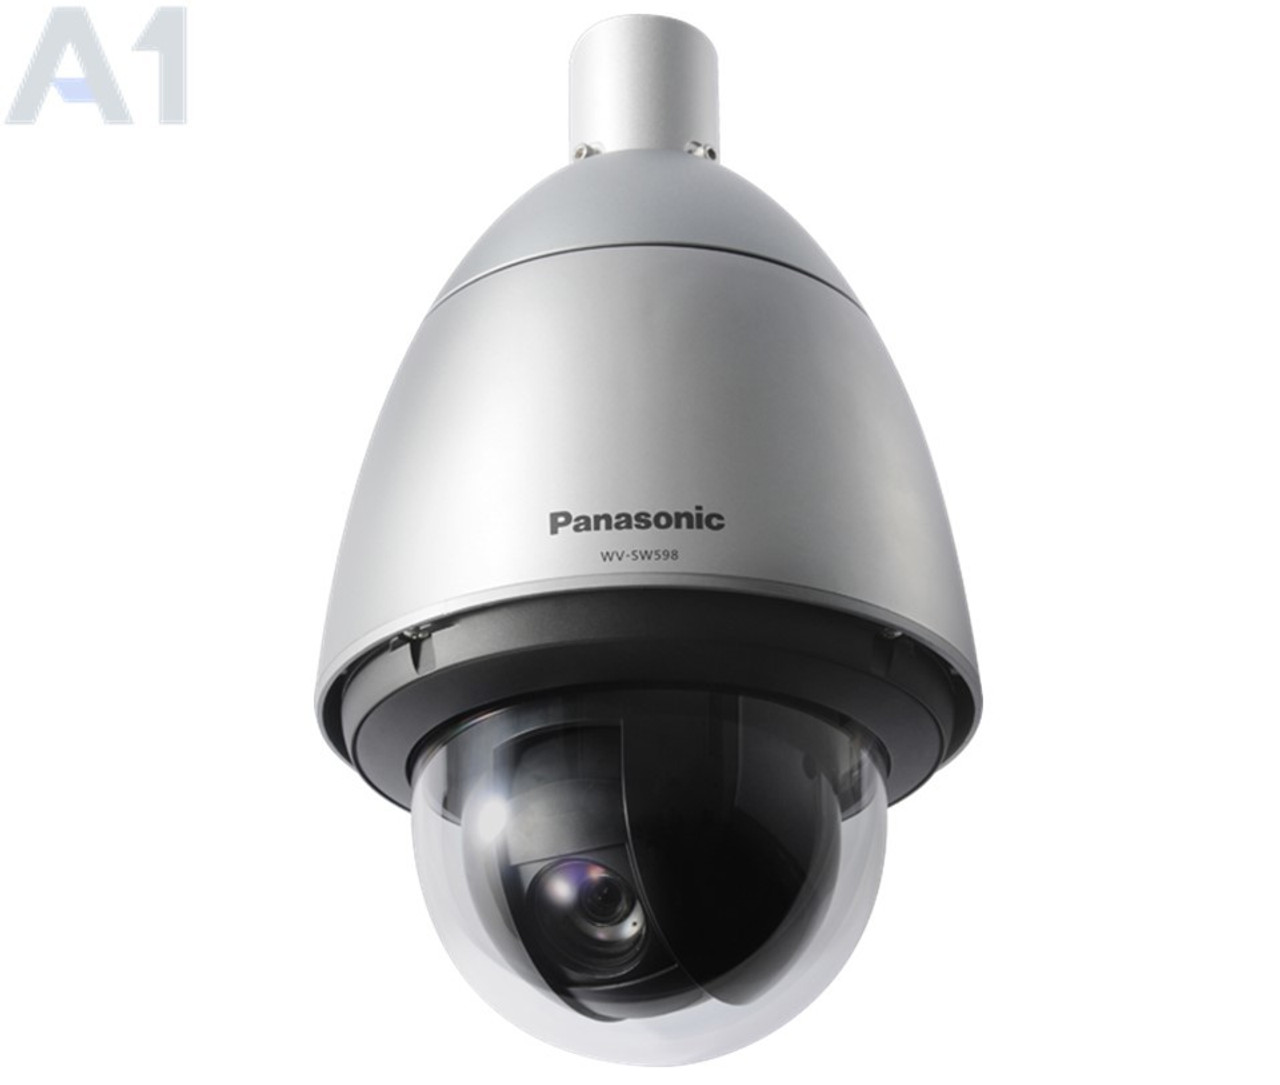 Escudero barrer ¿Cómo Panasonic WV-SW598A Outdoor PTZ IP Security Camera